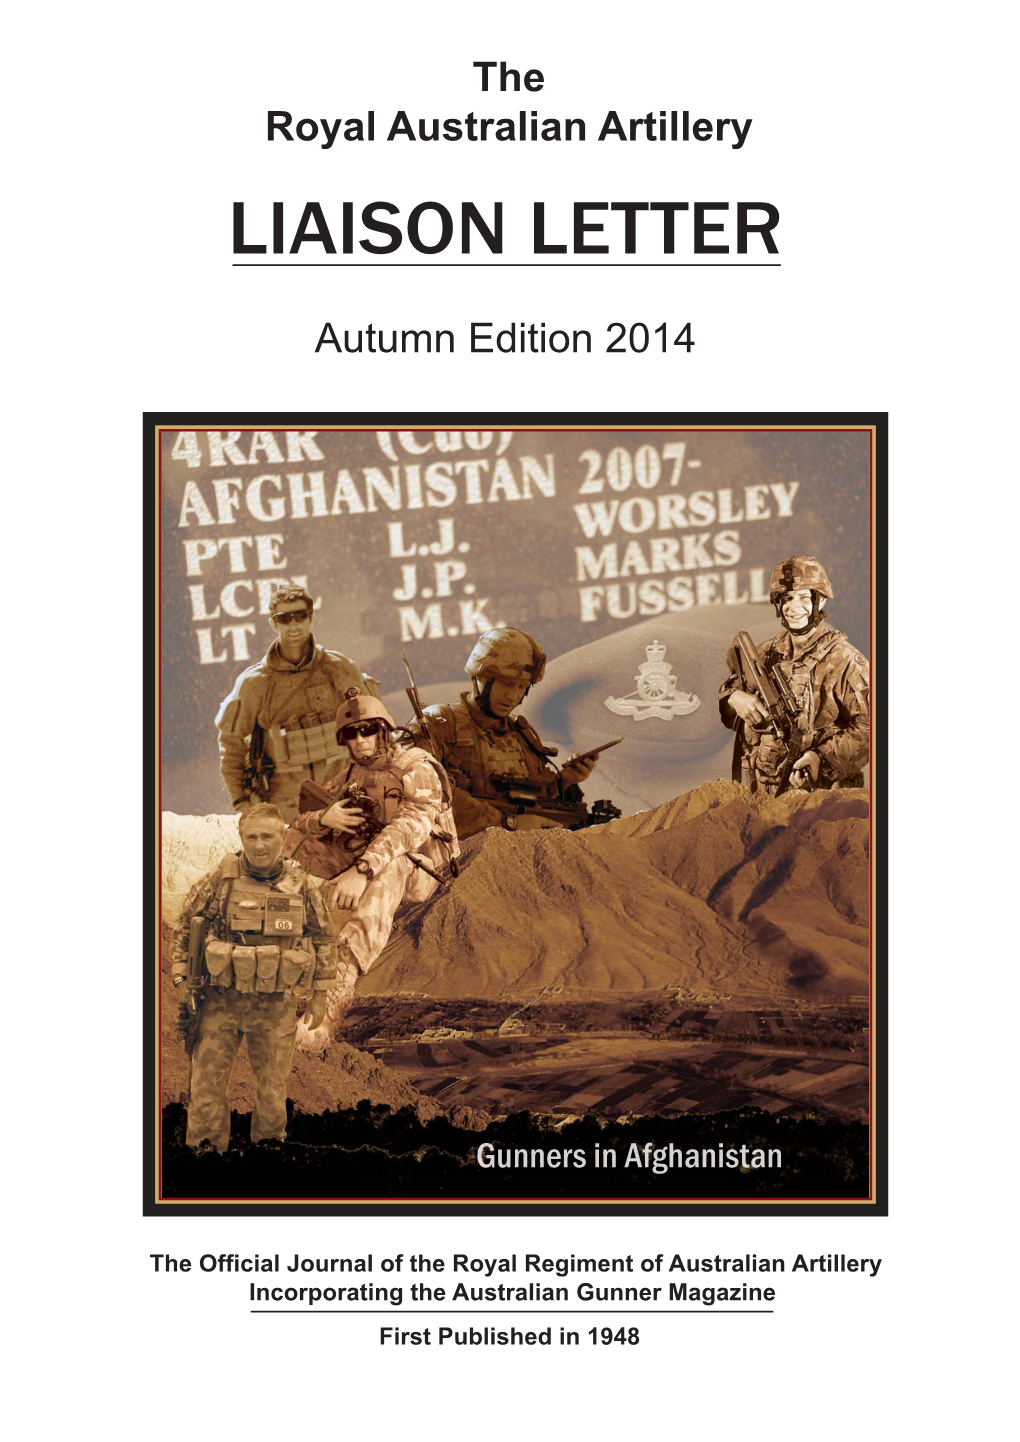 RAA Liaison Letter Autumn 2014